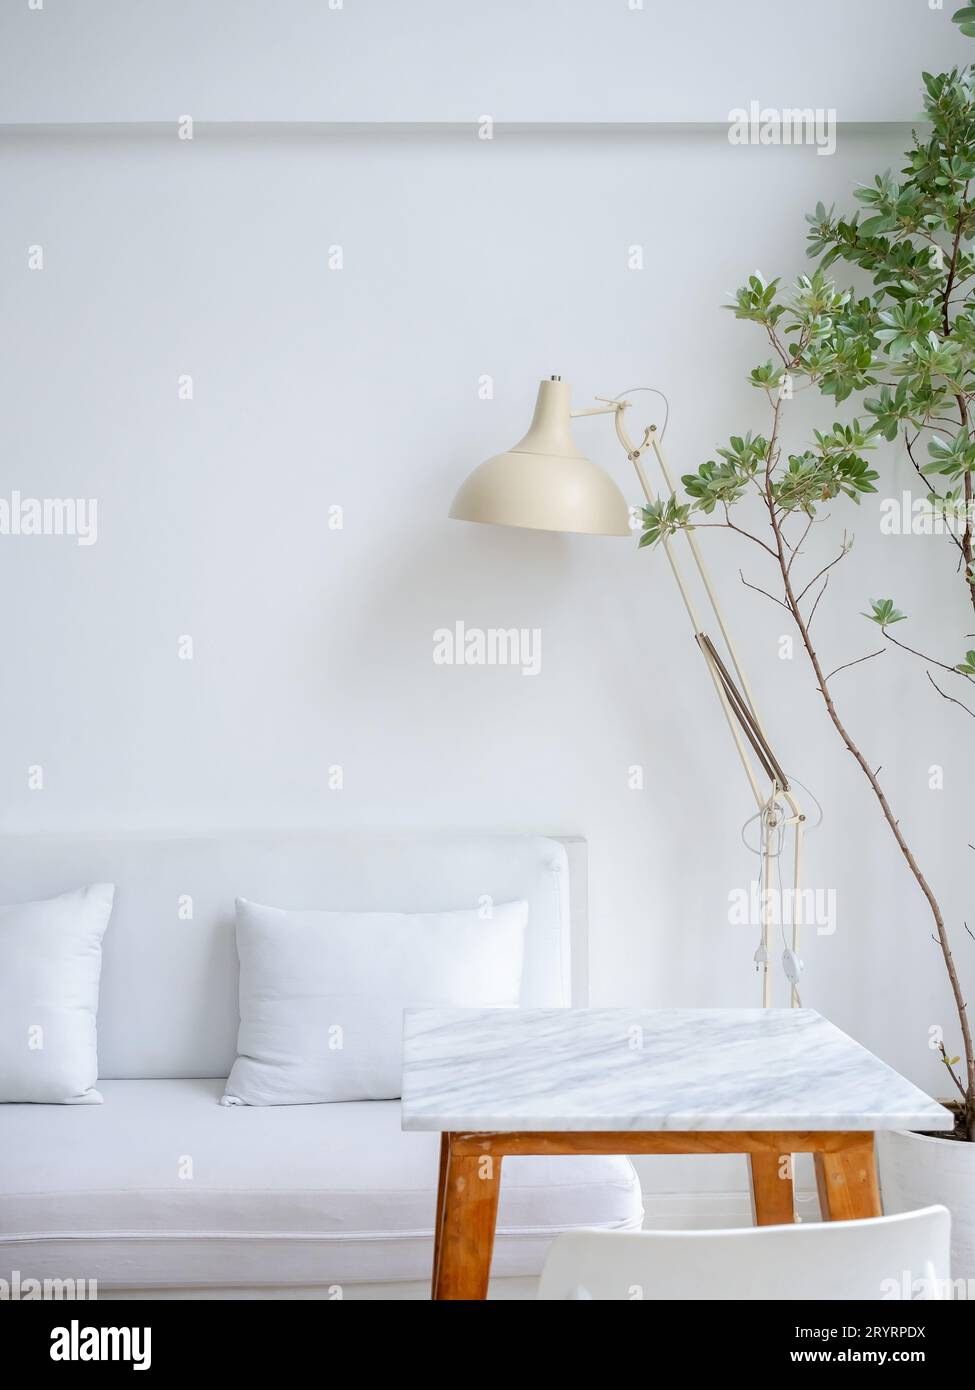 Moderne, entspannende und saubere Wohnzimmerecke mit weißer Couch oder Sofasessel mit Kissen, beige Tischlampe neben leerem Marmortisch Stockfoto